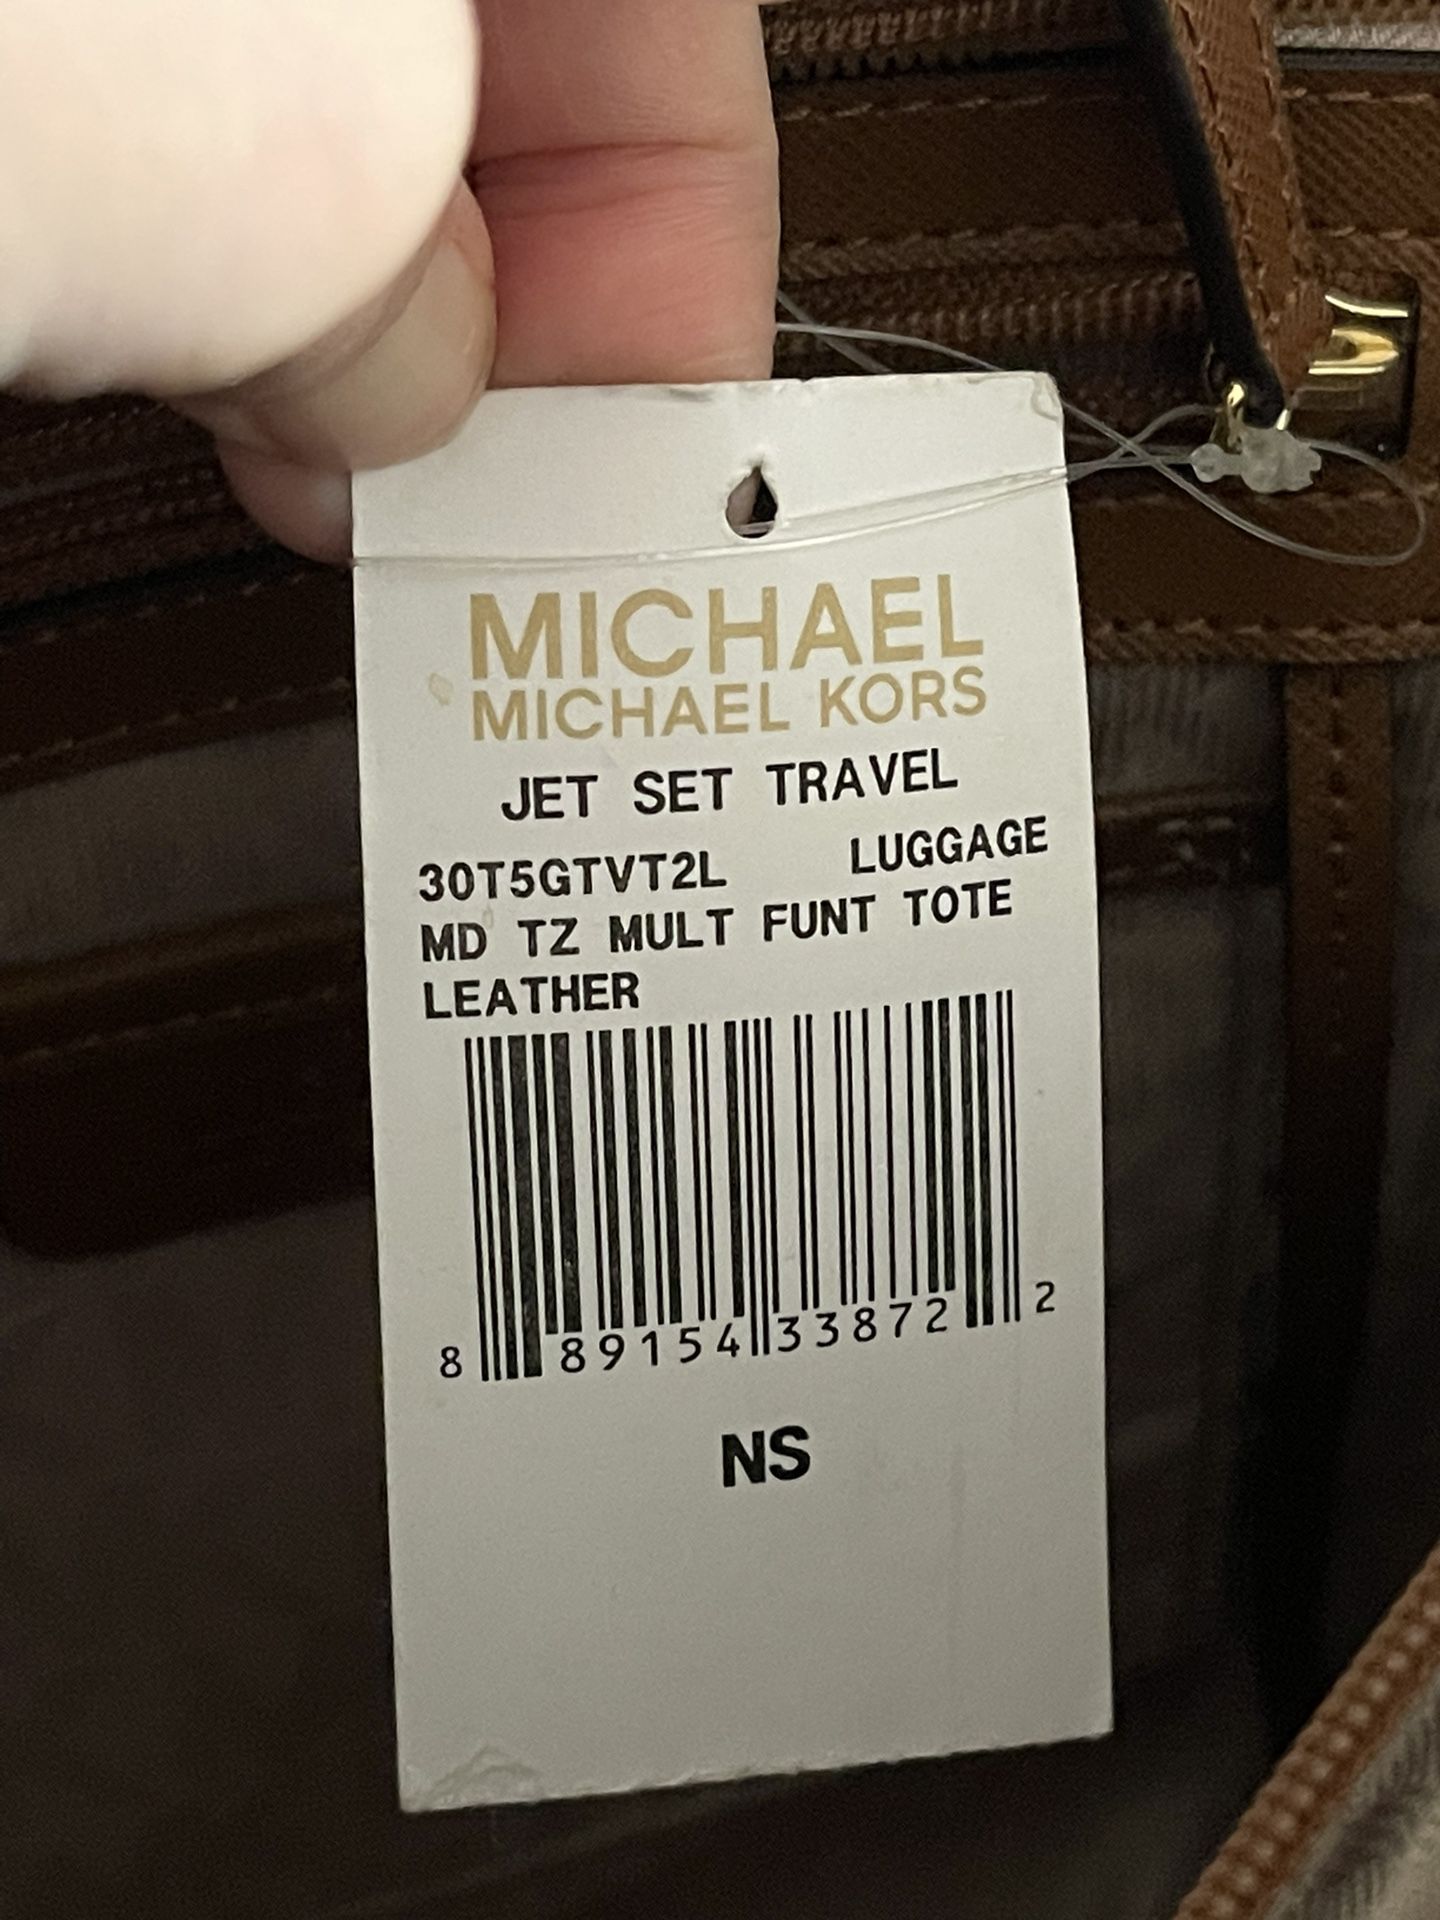 Totes bags Michael Kors - Jet Set Travel large tote - 30T5GTVT2L